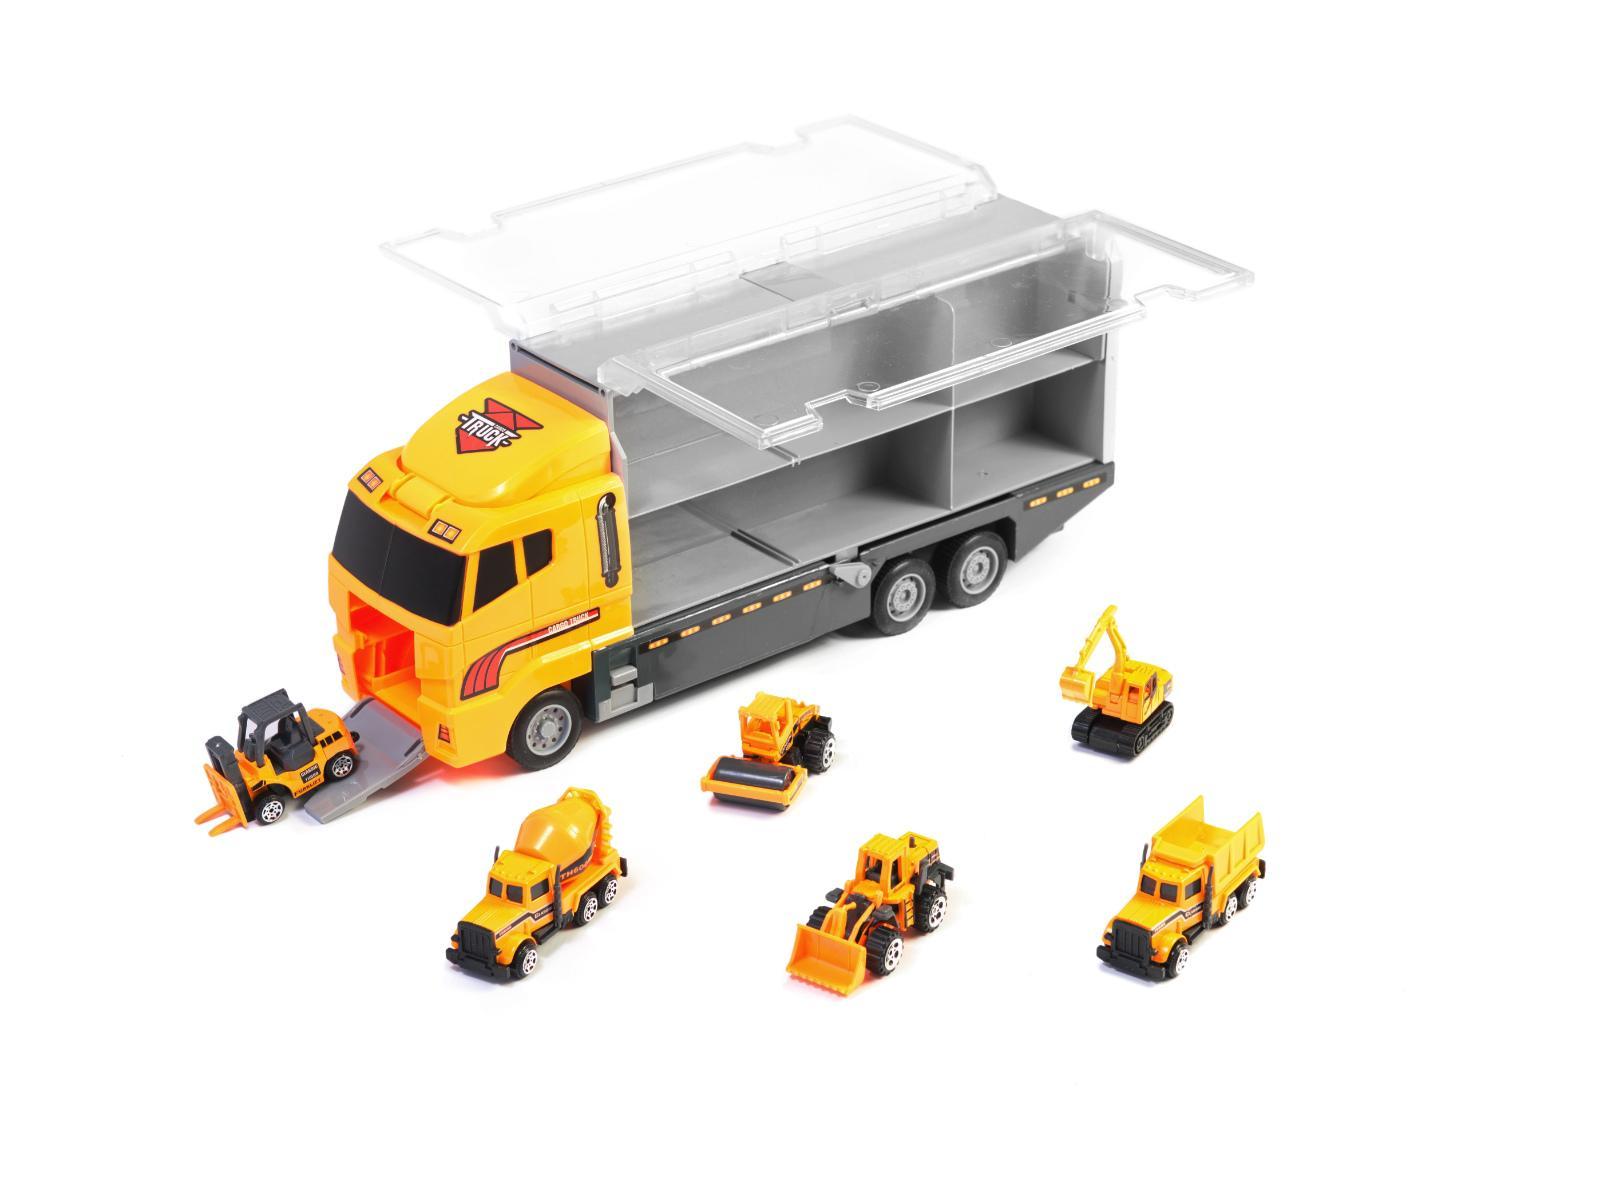 Transporter ciężarówka TIR wyrzutnia + metalowe auta maszyny budowlane zabawka dla dzieci 15x10x36cm 1 Full Screen